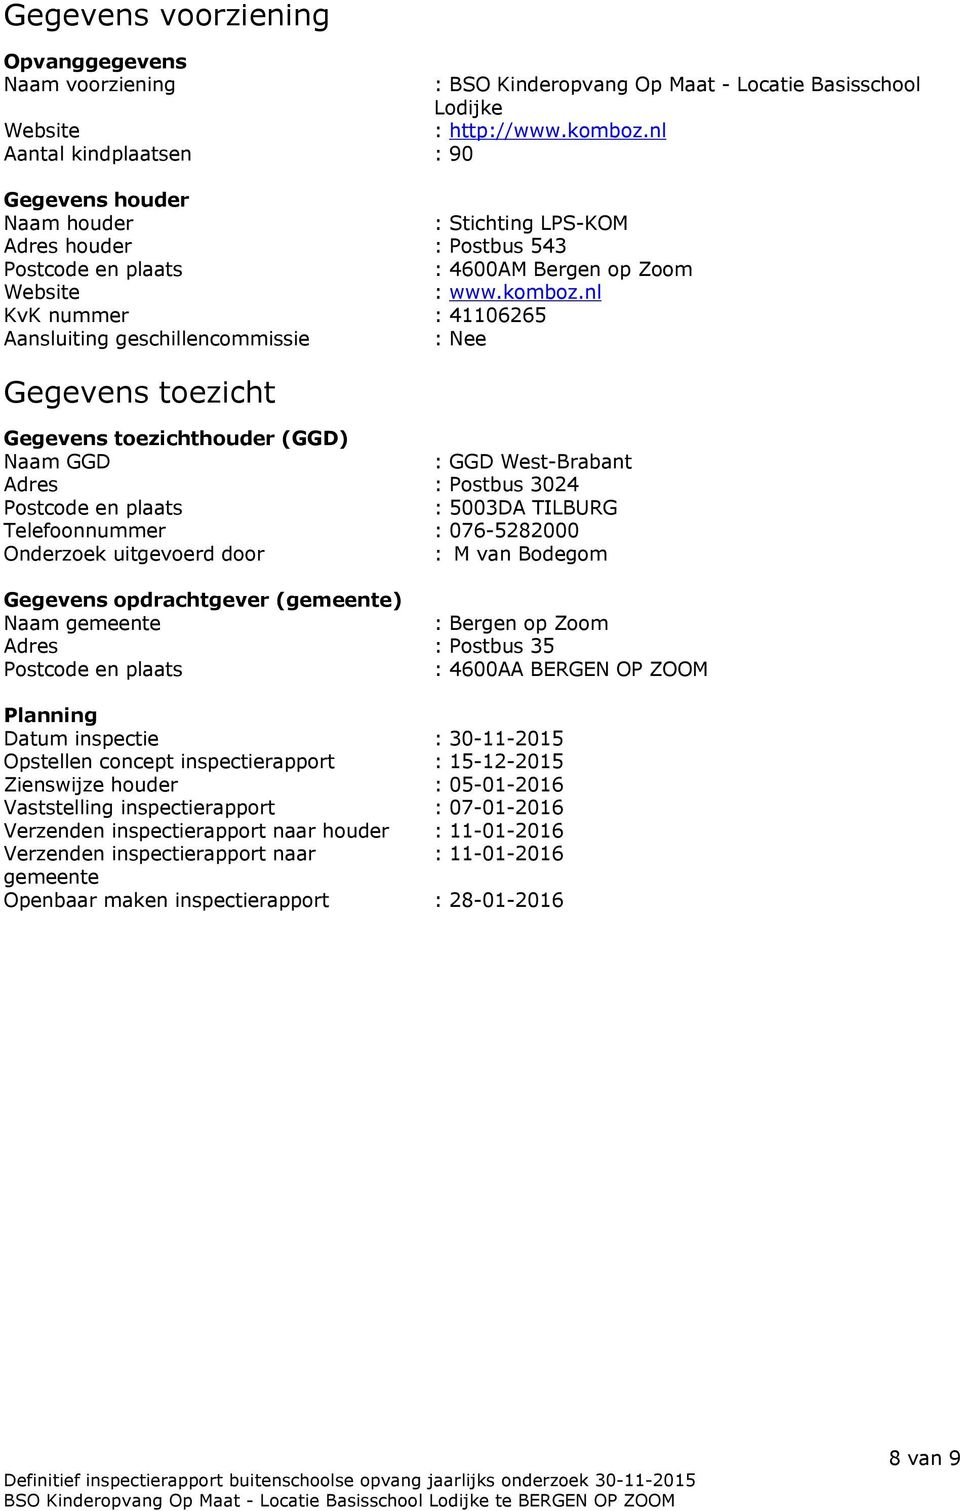 nl KvK nummer : 41106265 Aansluiting geschillencommissie : Nee Gegevens toezicht Gegevens toezichthouder (GGD) Naam GGD : GGD West-Brabant Adres : Postbus 3024 Postcode en plaats : 5003DA TILBURG